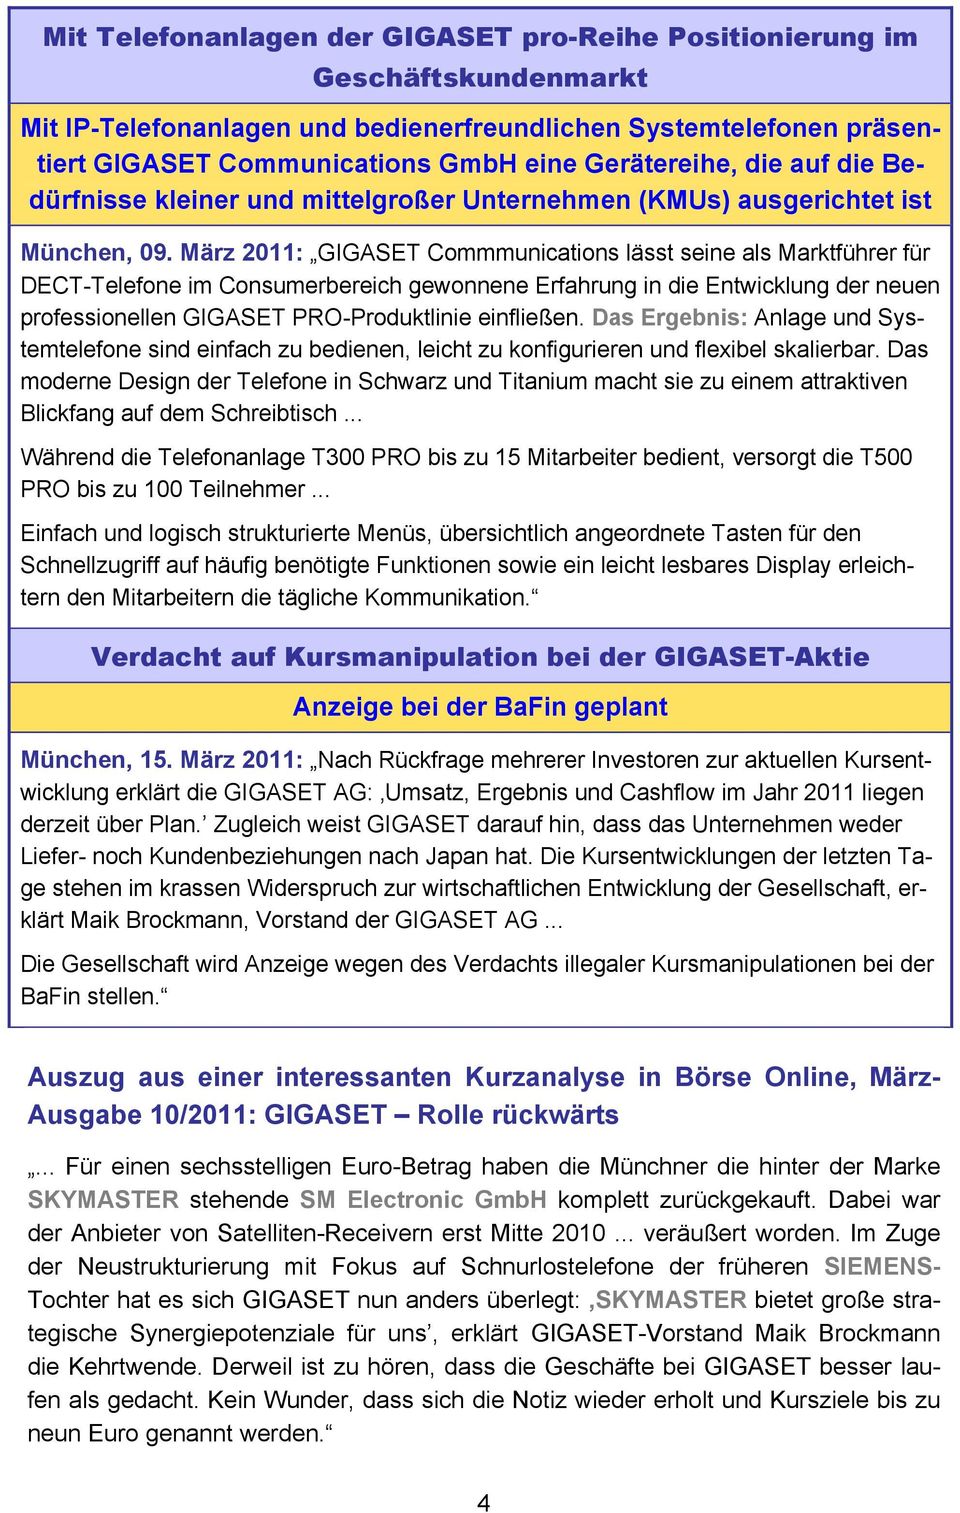 März 2011: GIGASET Commmunications lässt seine als Marktführer für DECT-Telefone im Consumerbereich gewonnene Erfahrung in die Entwicklung der neuen professionellen GIGASET PRO-Produktlinie